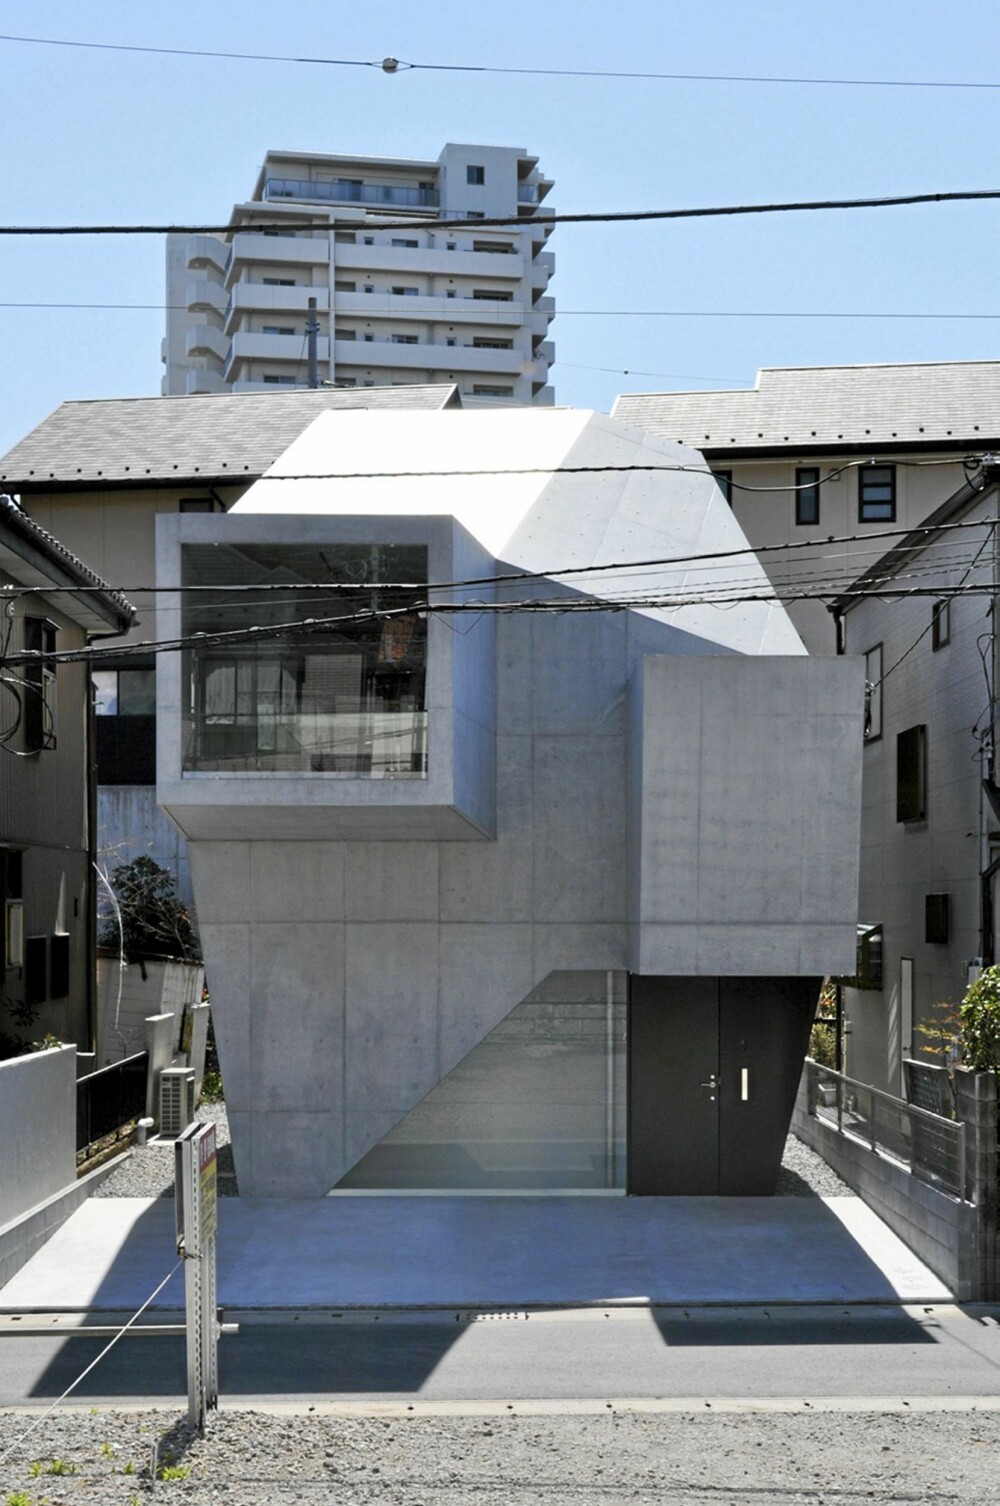 ANNERLEDES: Den minimalistiske og originale bygningen skiller seg ut fra omgivelsene.